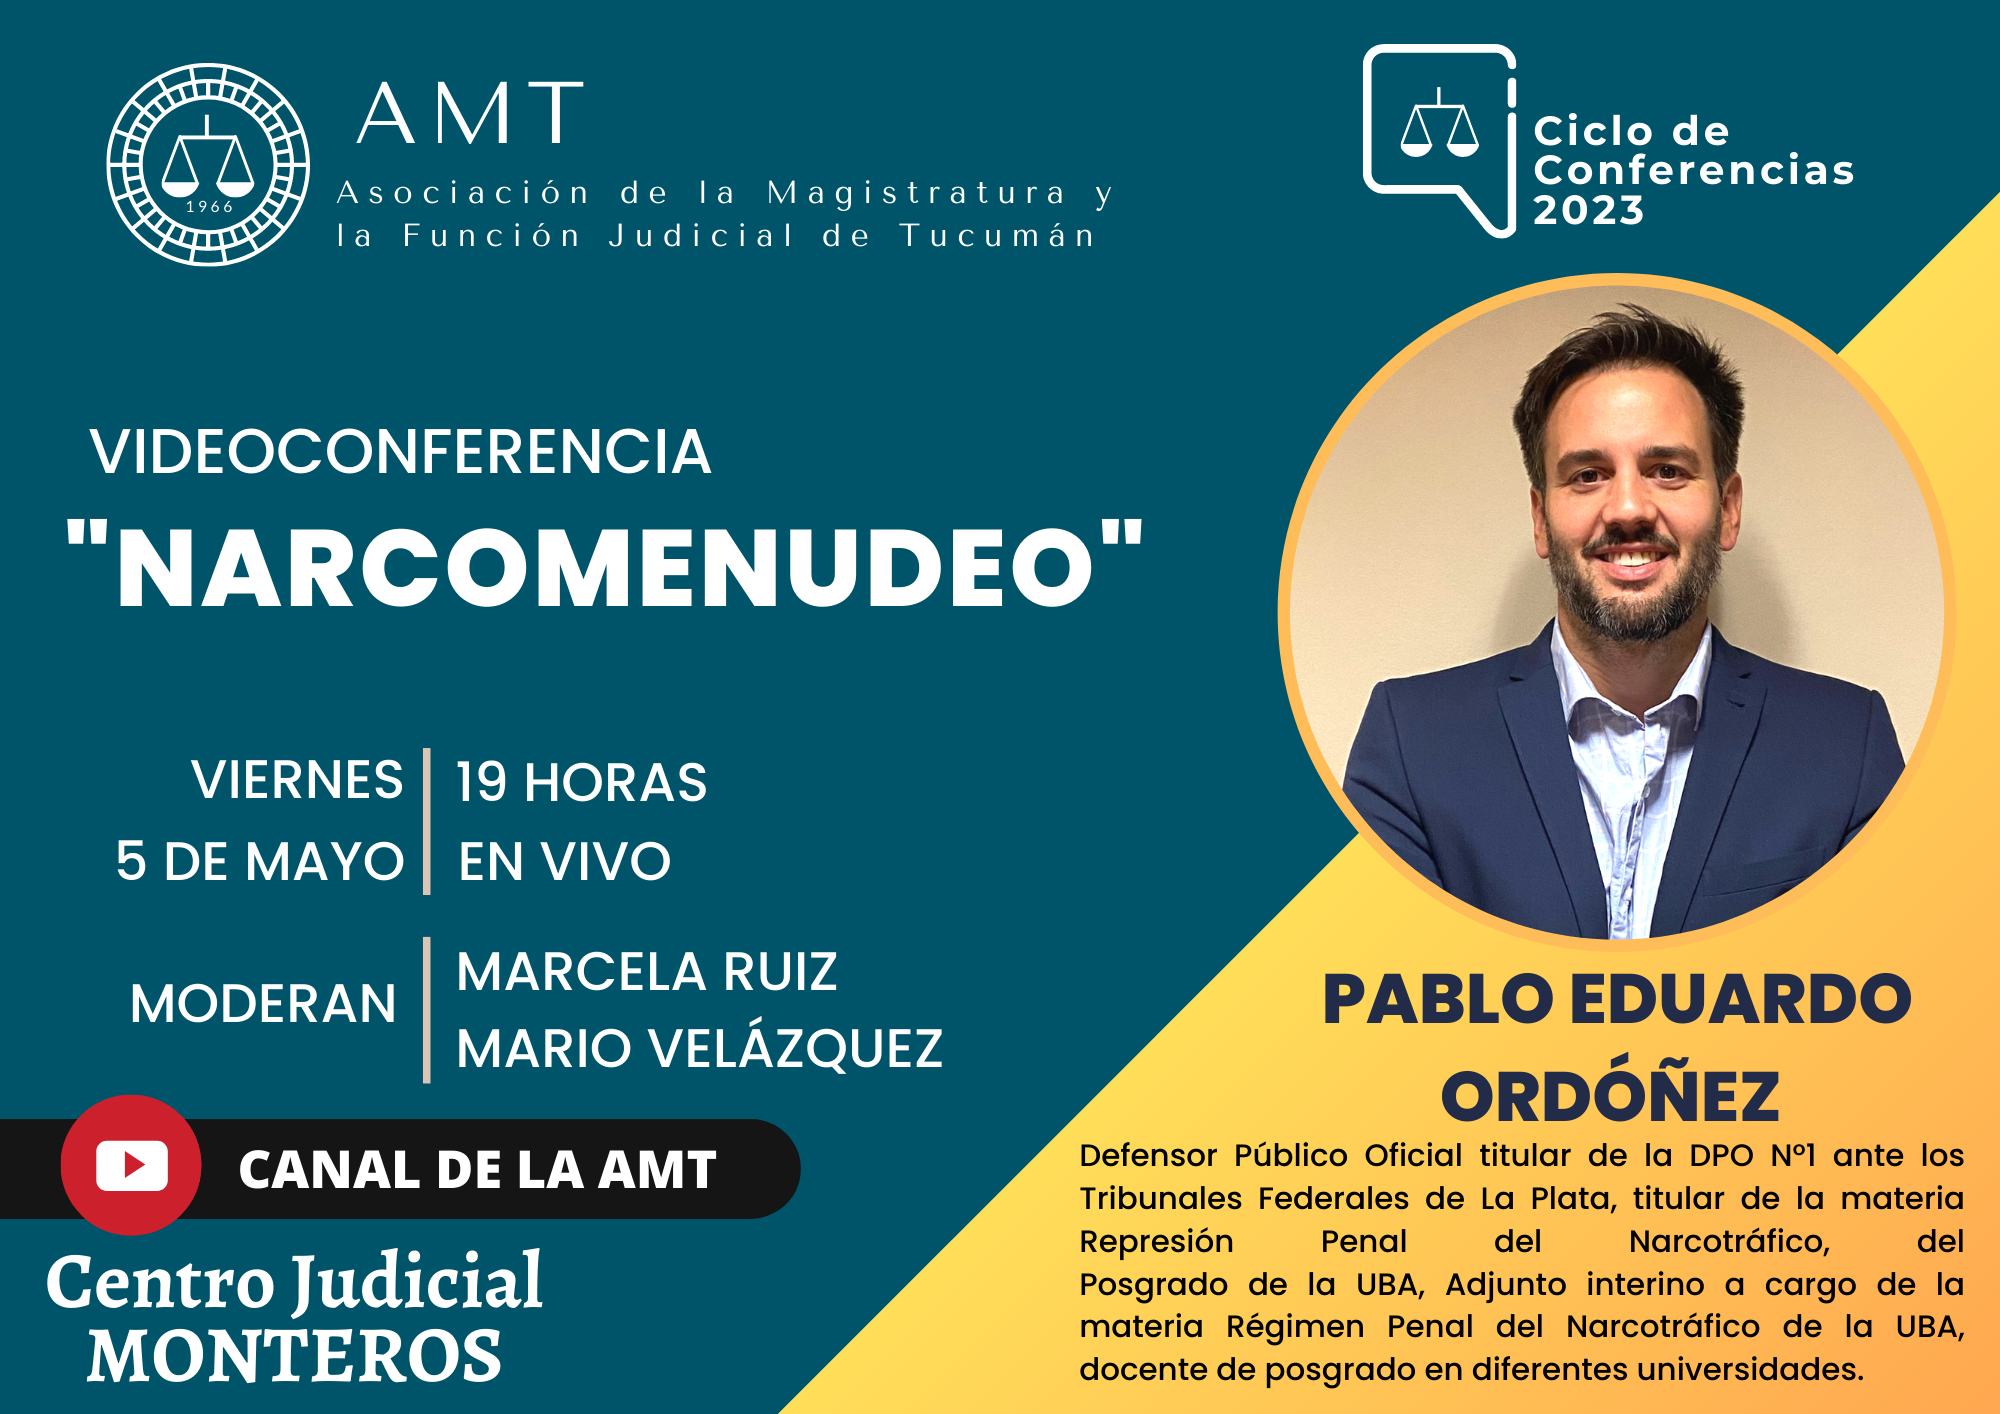 Vuelva a ver la conferencia de Pablo Eduardo Ordóñez «Narcomenudeo»